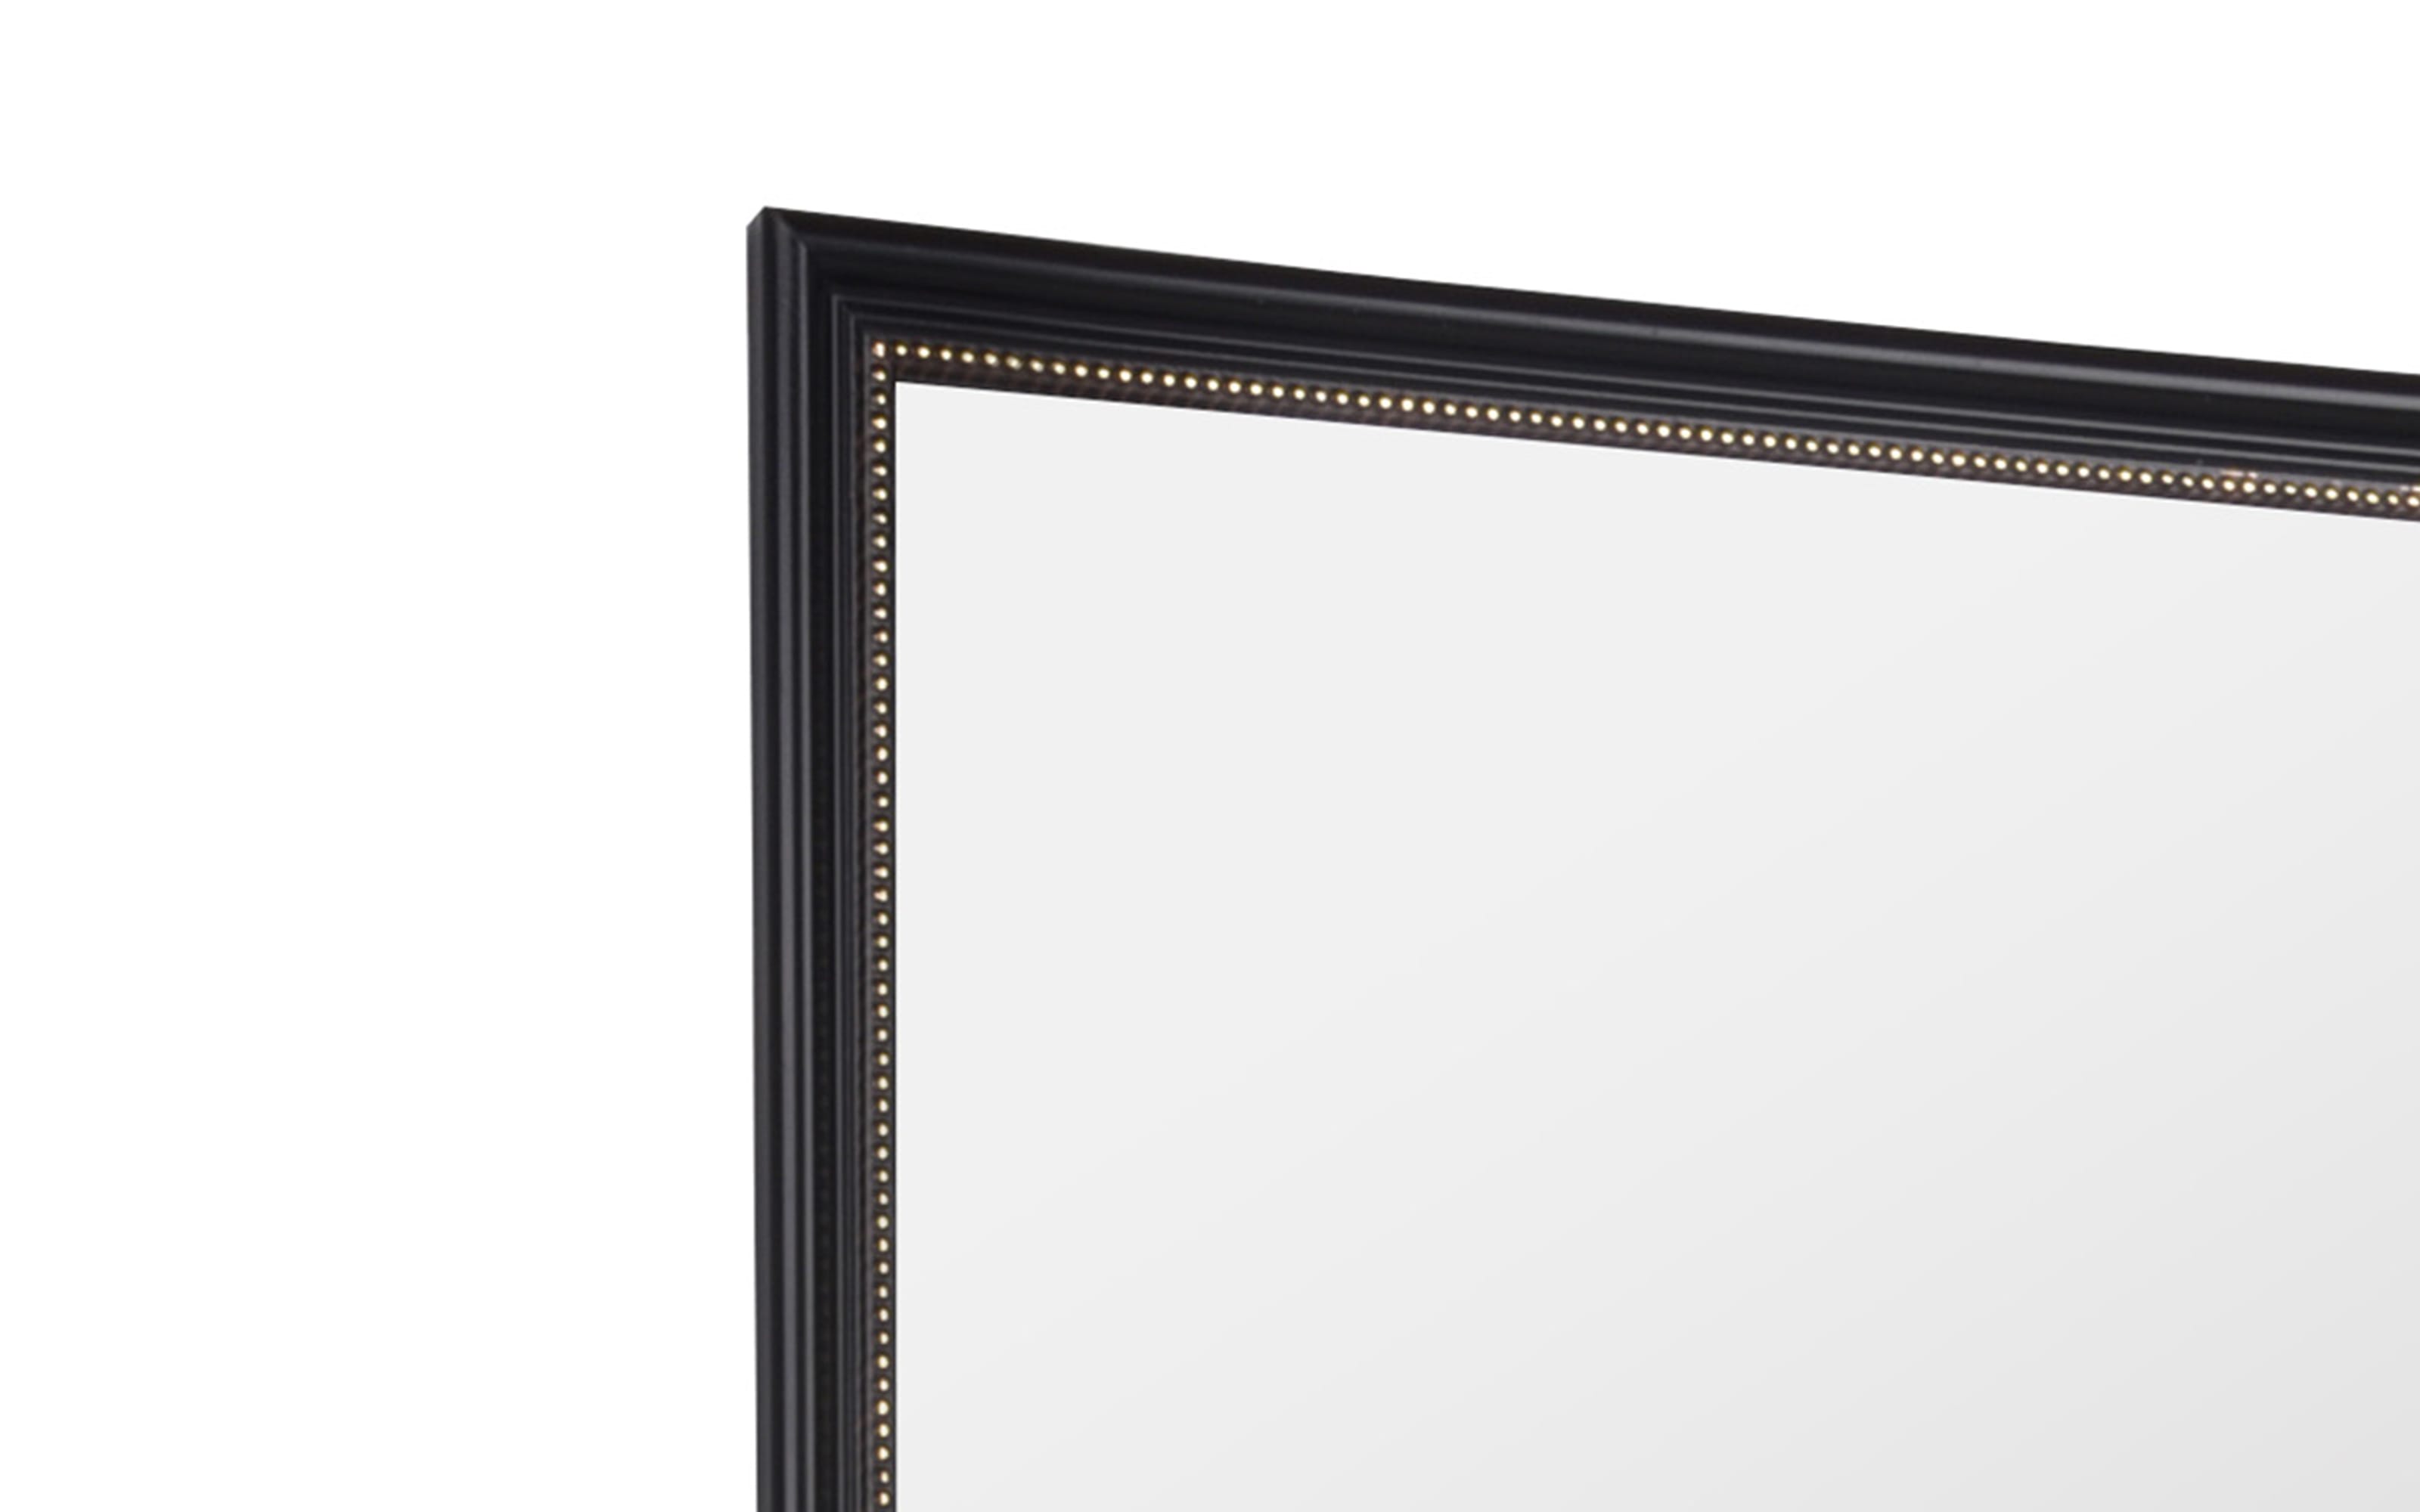 Rahmenspiegel Nadine, schwarz/goldfarbig, 34 x 45 cm